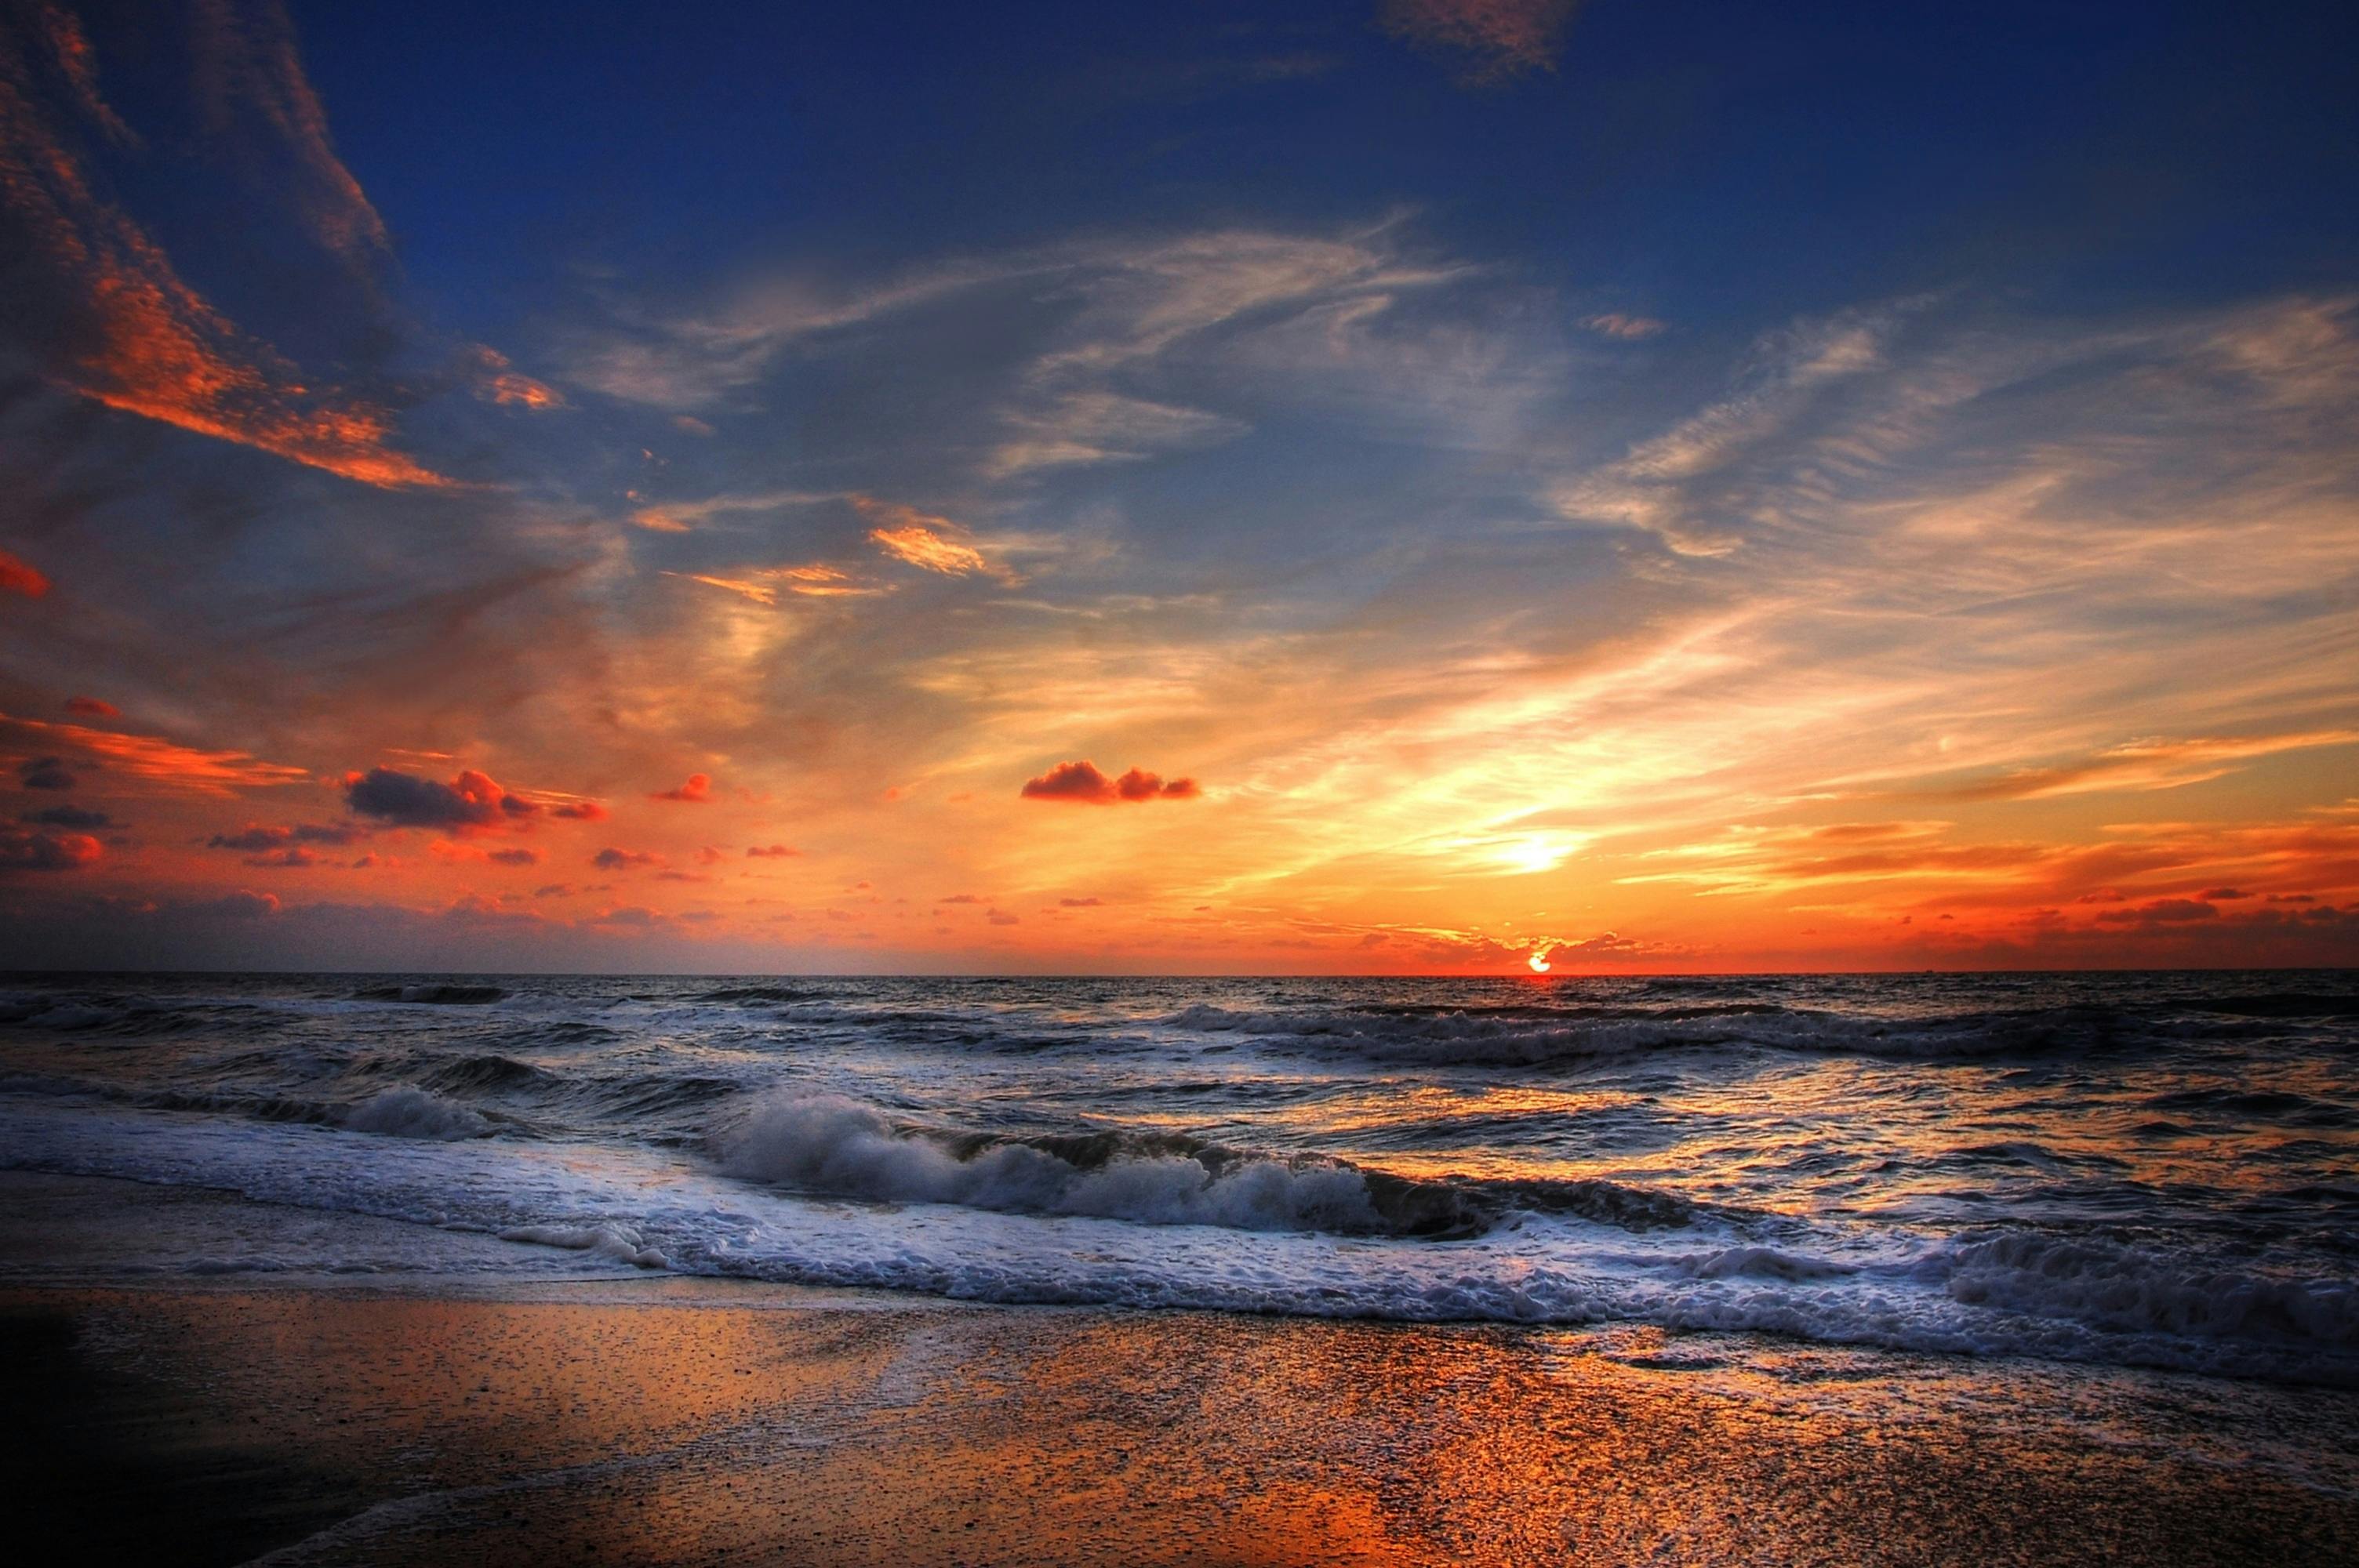 1000+ Great Beach Sunset Photos · Pexels · Free Stock Photos